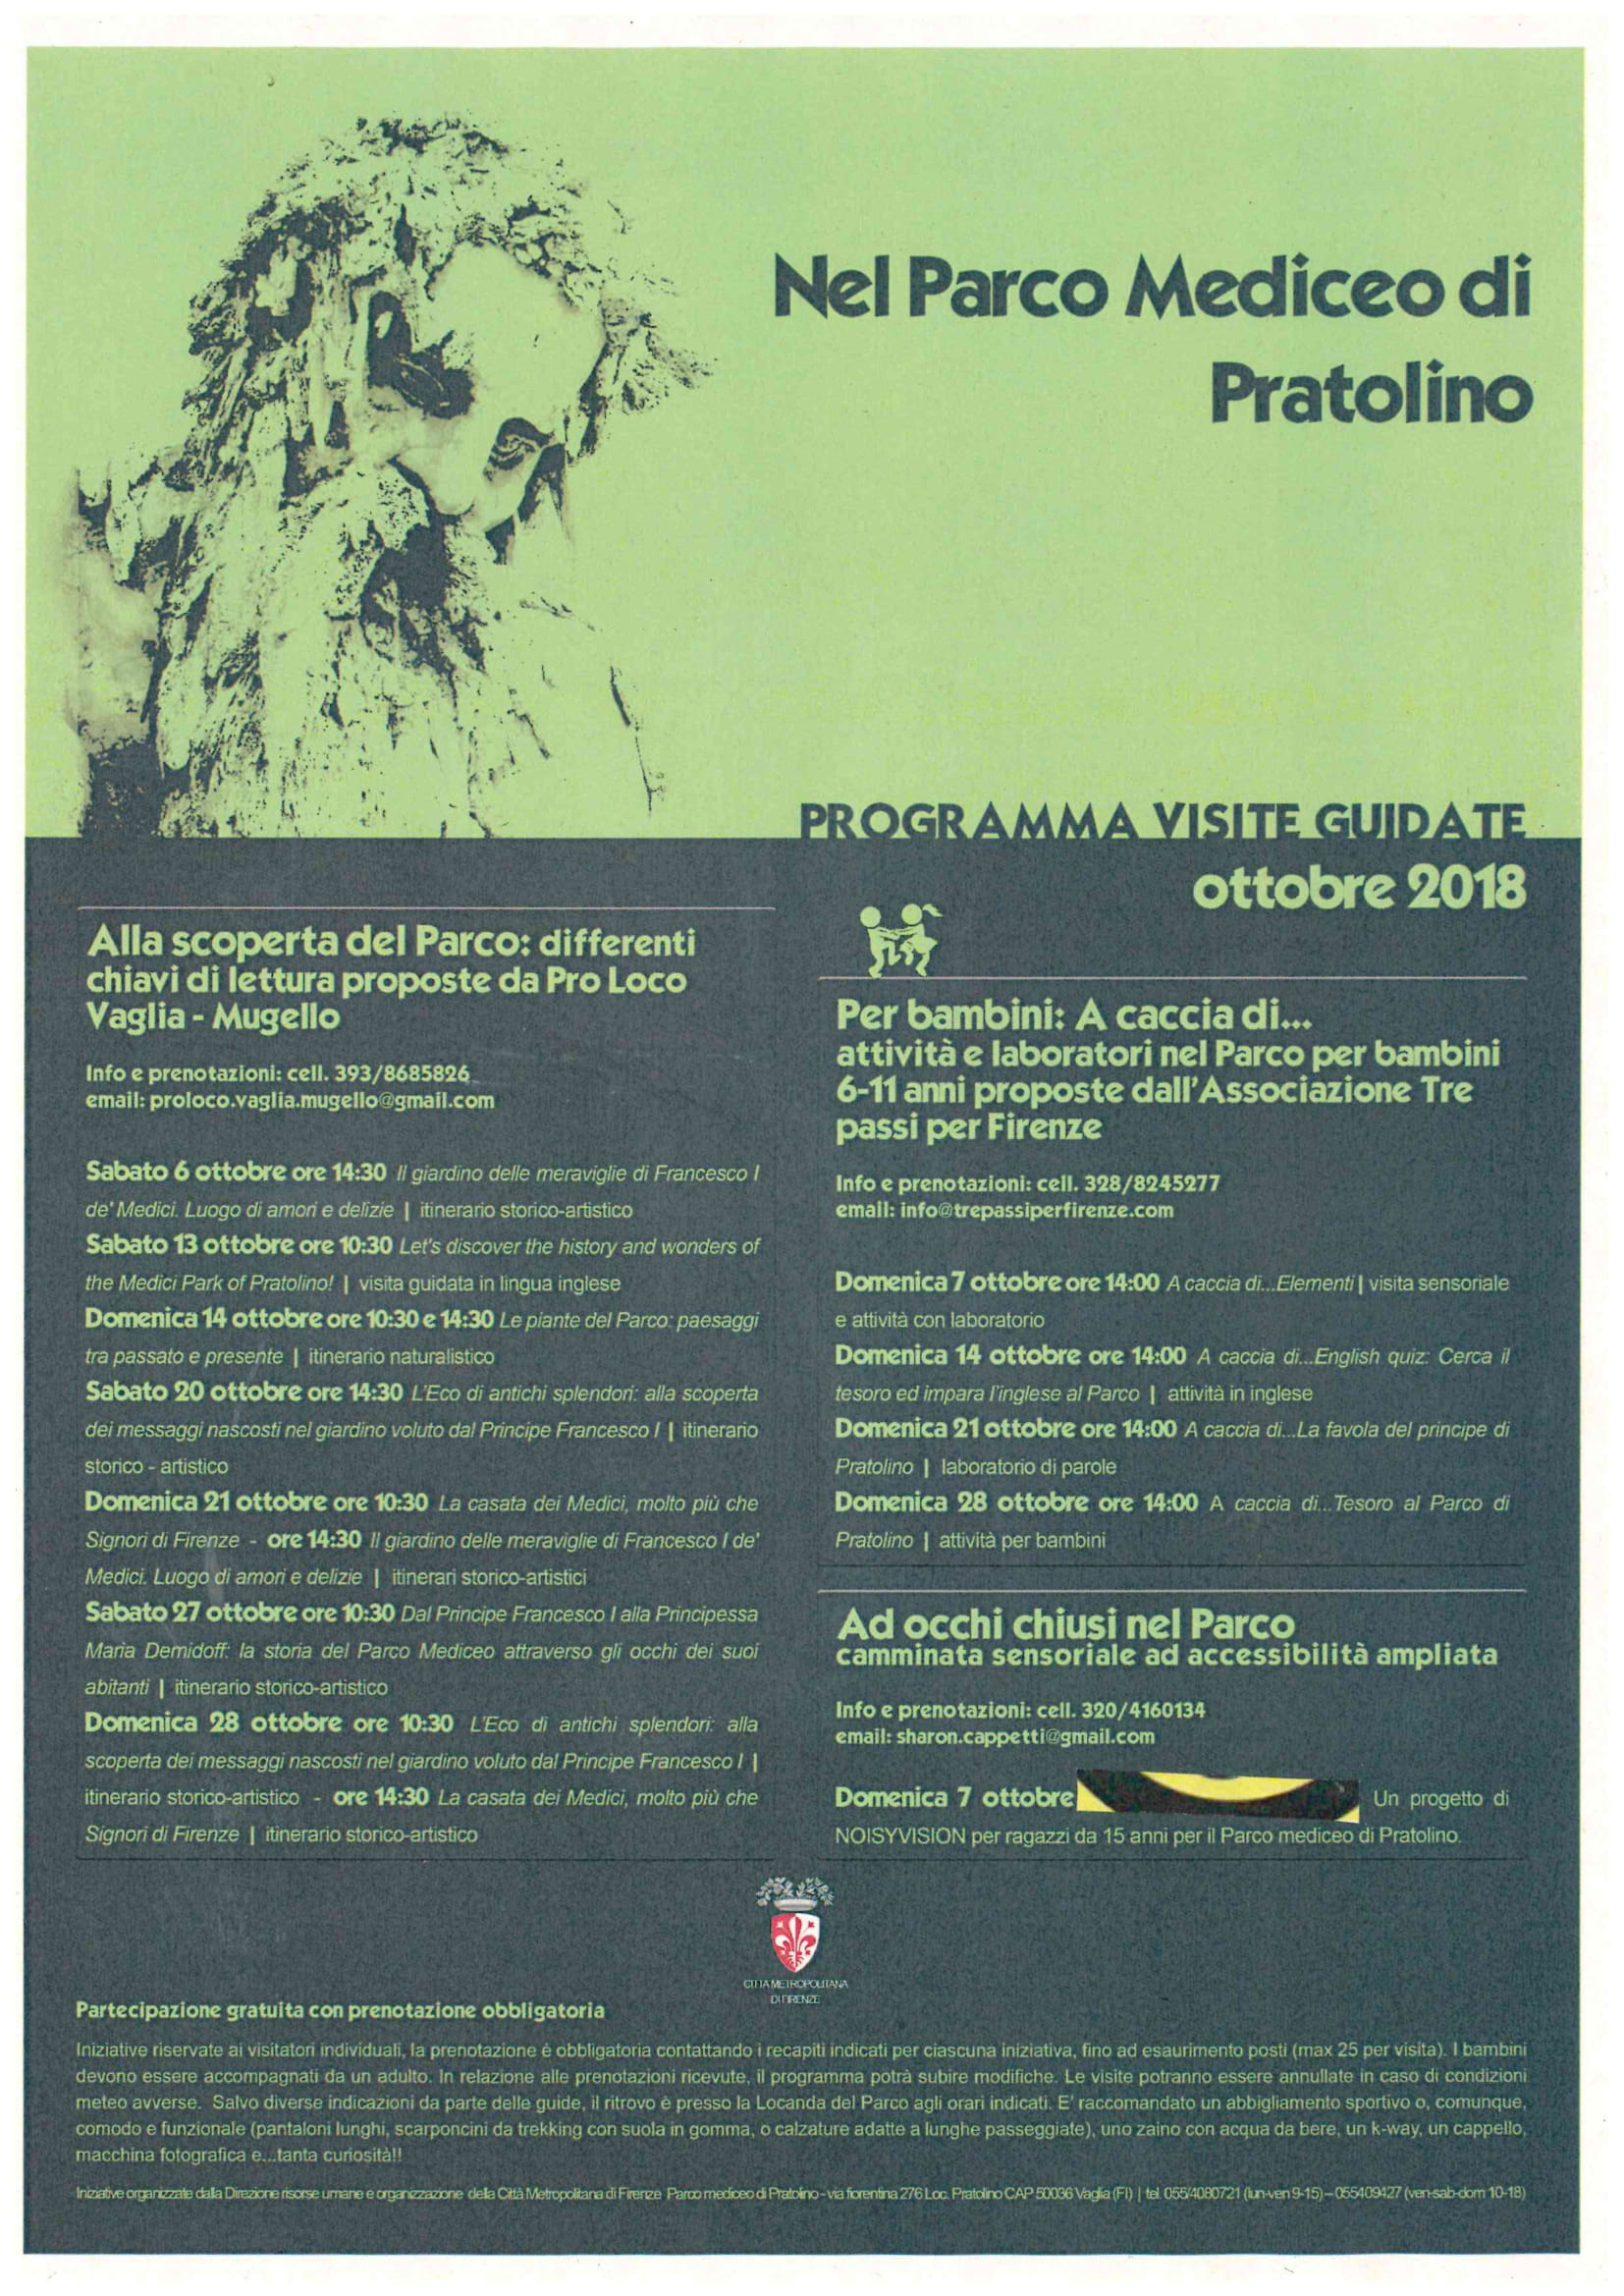 Il programma del Parco di Pratolino nel mese di ottobre 2018